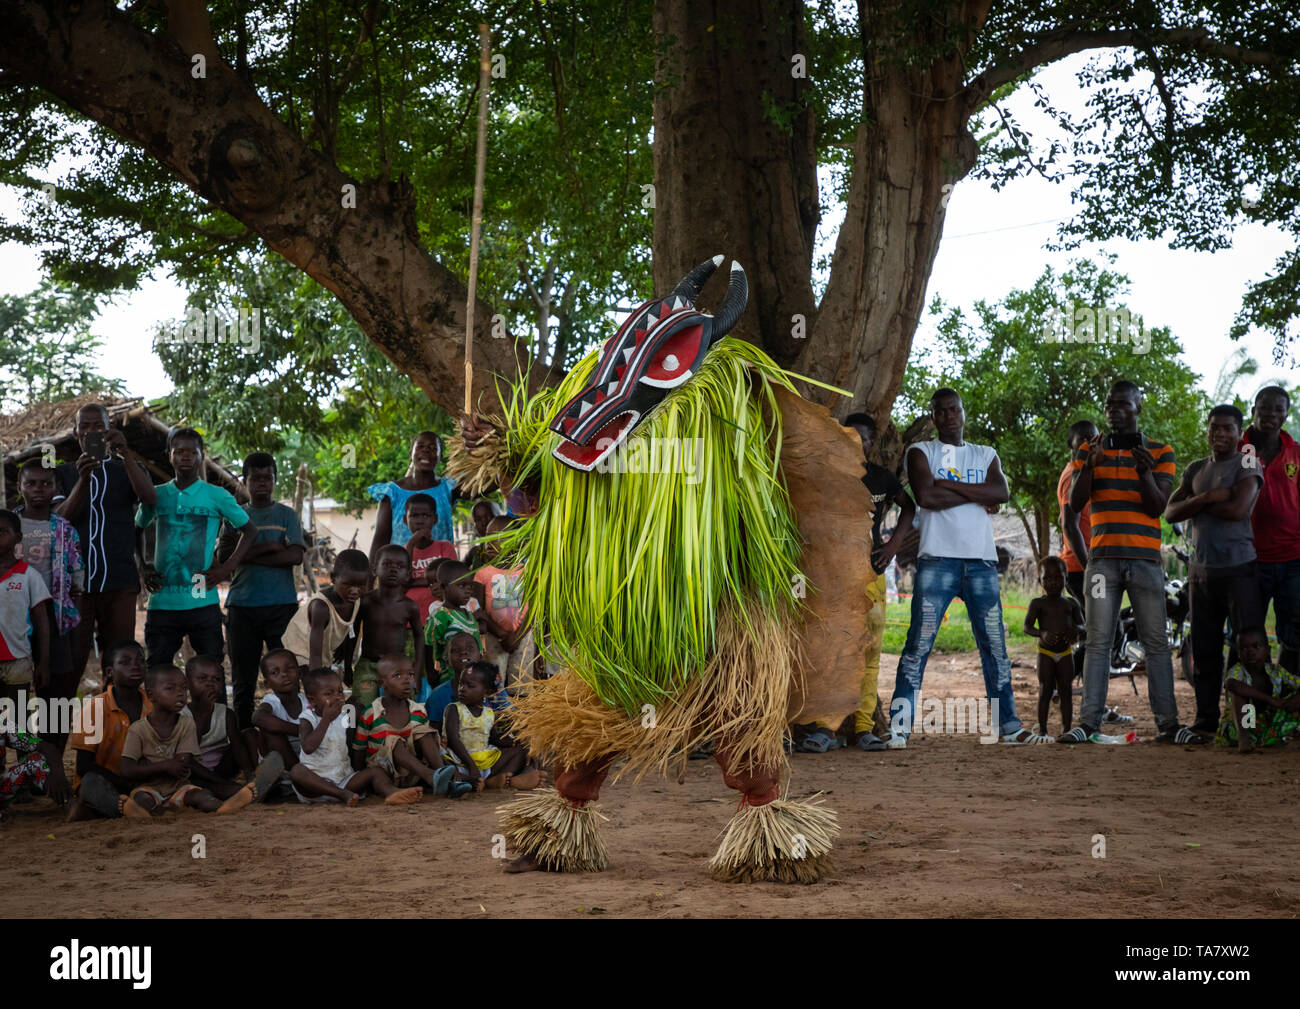 Goli maschera sacra danza nel baule tribù durante una cerimonia, Région des Lacs, Bomizanbo, Costa d'Avorio Foto Stock